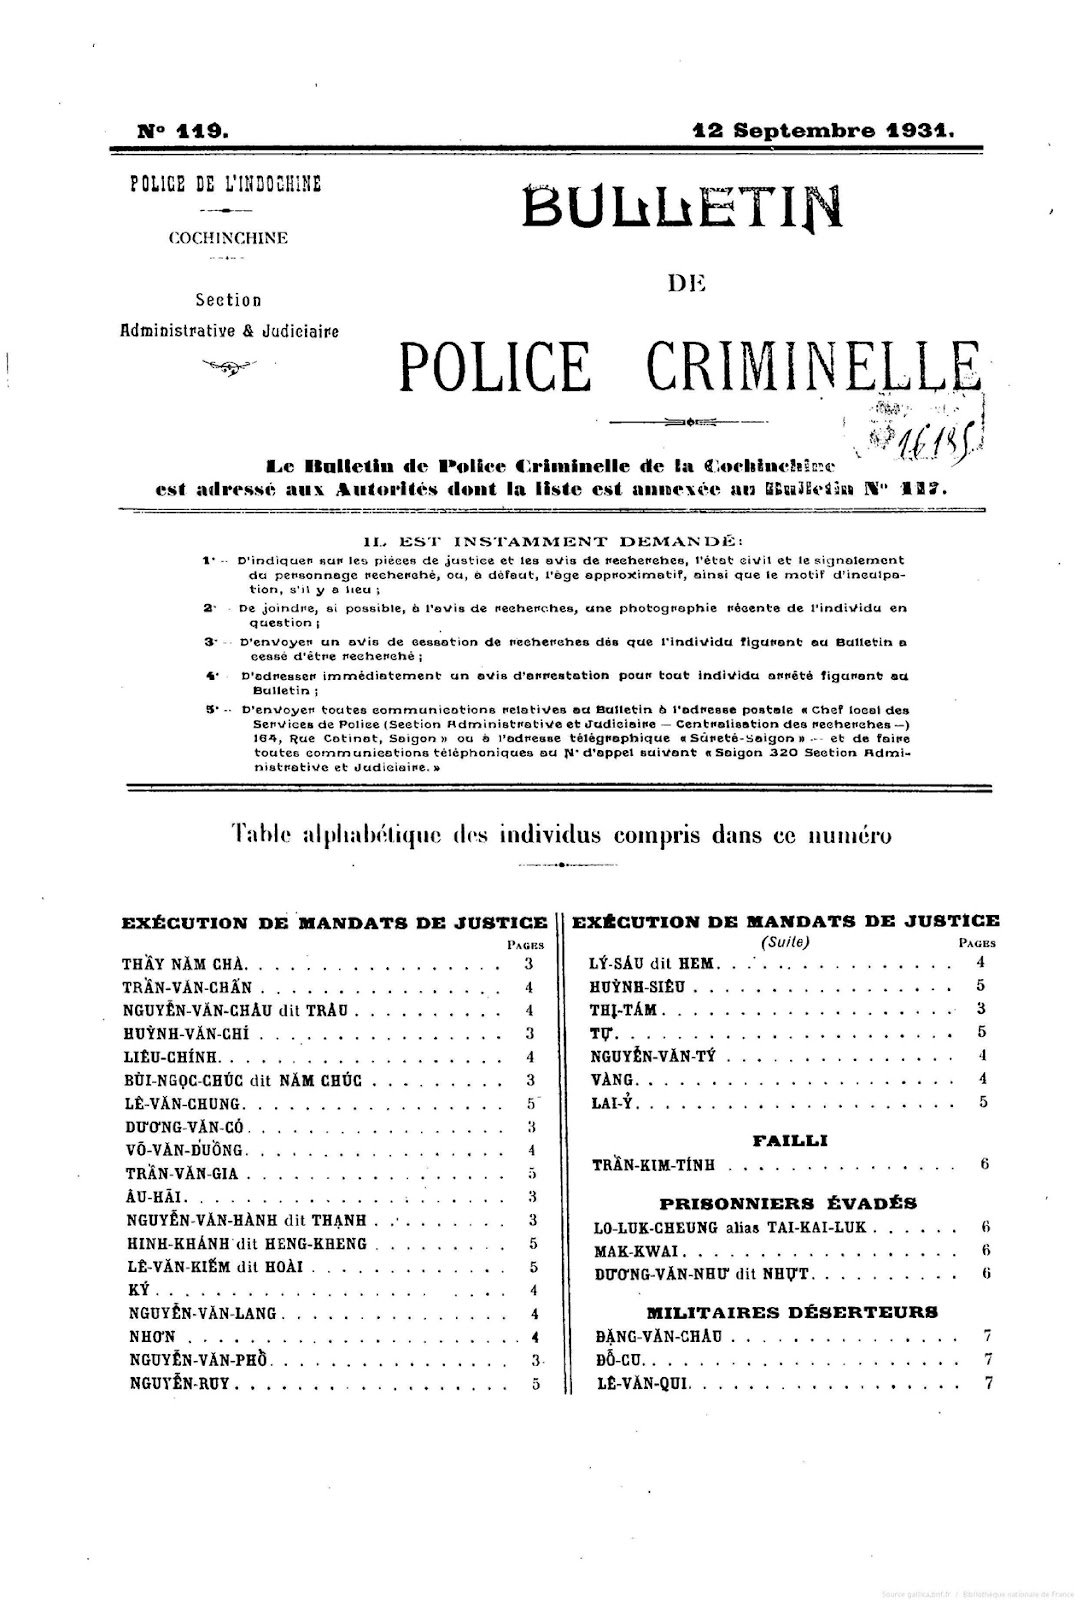 Trang 1 Báo cáo của Cảnh sát Nam Kỳ 12-09-1931 200 dpi.jpg